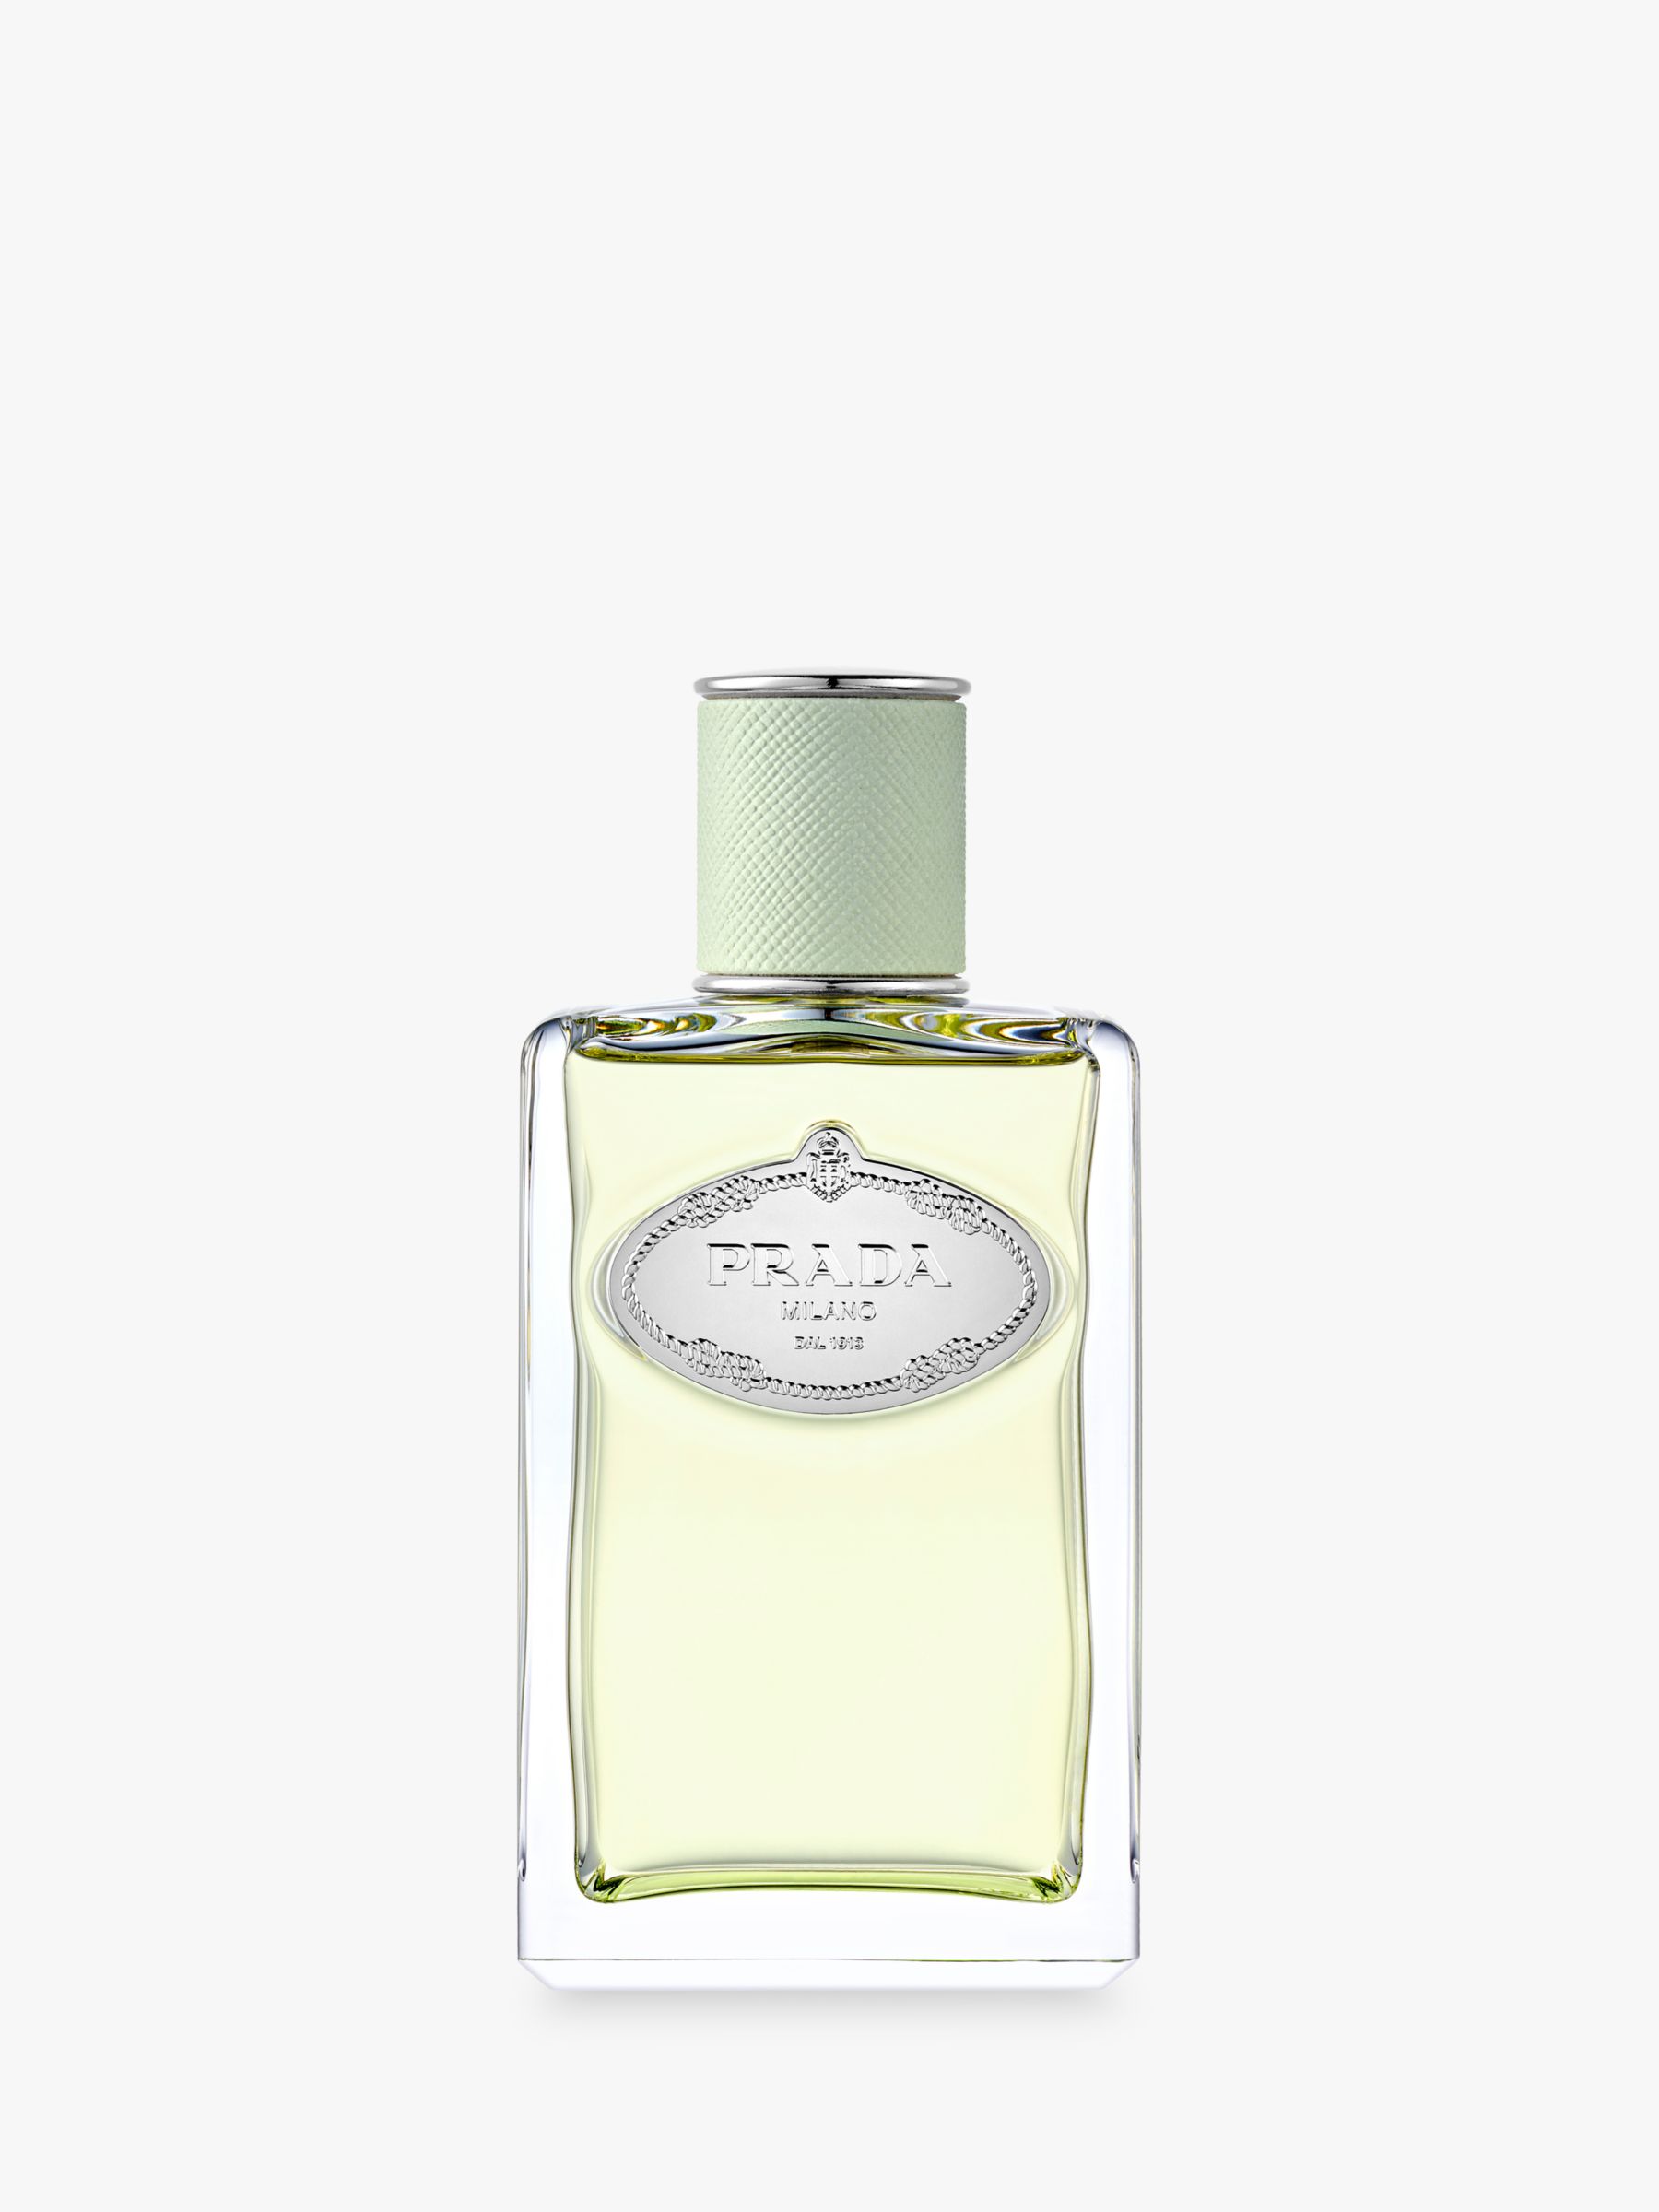 iris perfume price